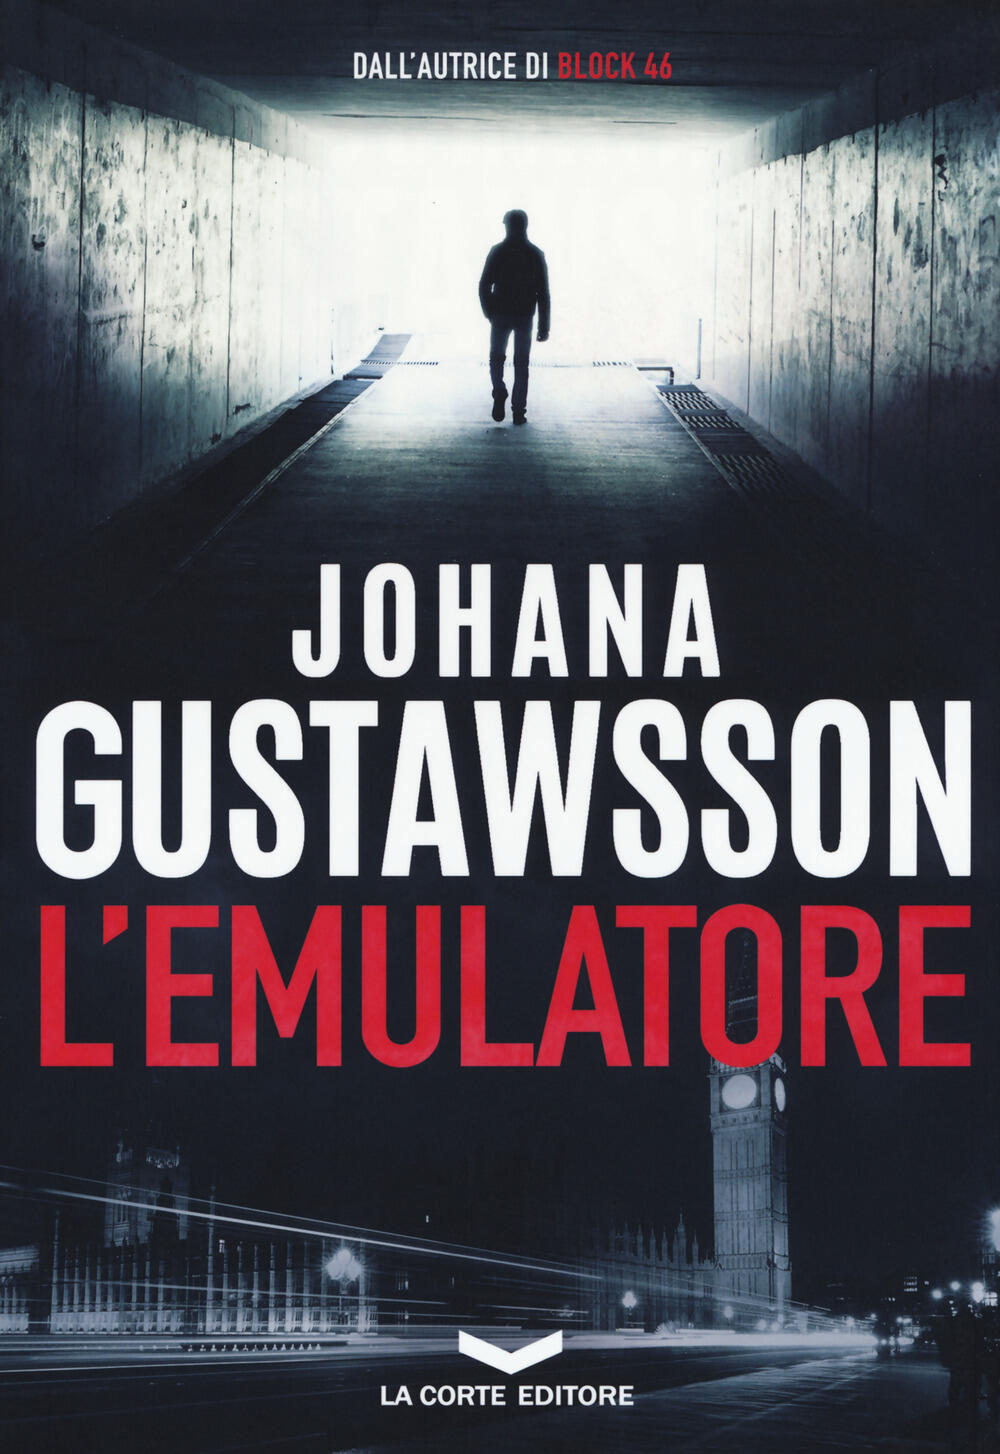 Risultati immagini per "Lâemulatore" di Johana Gustawsson